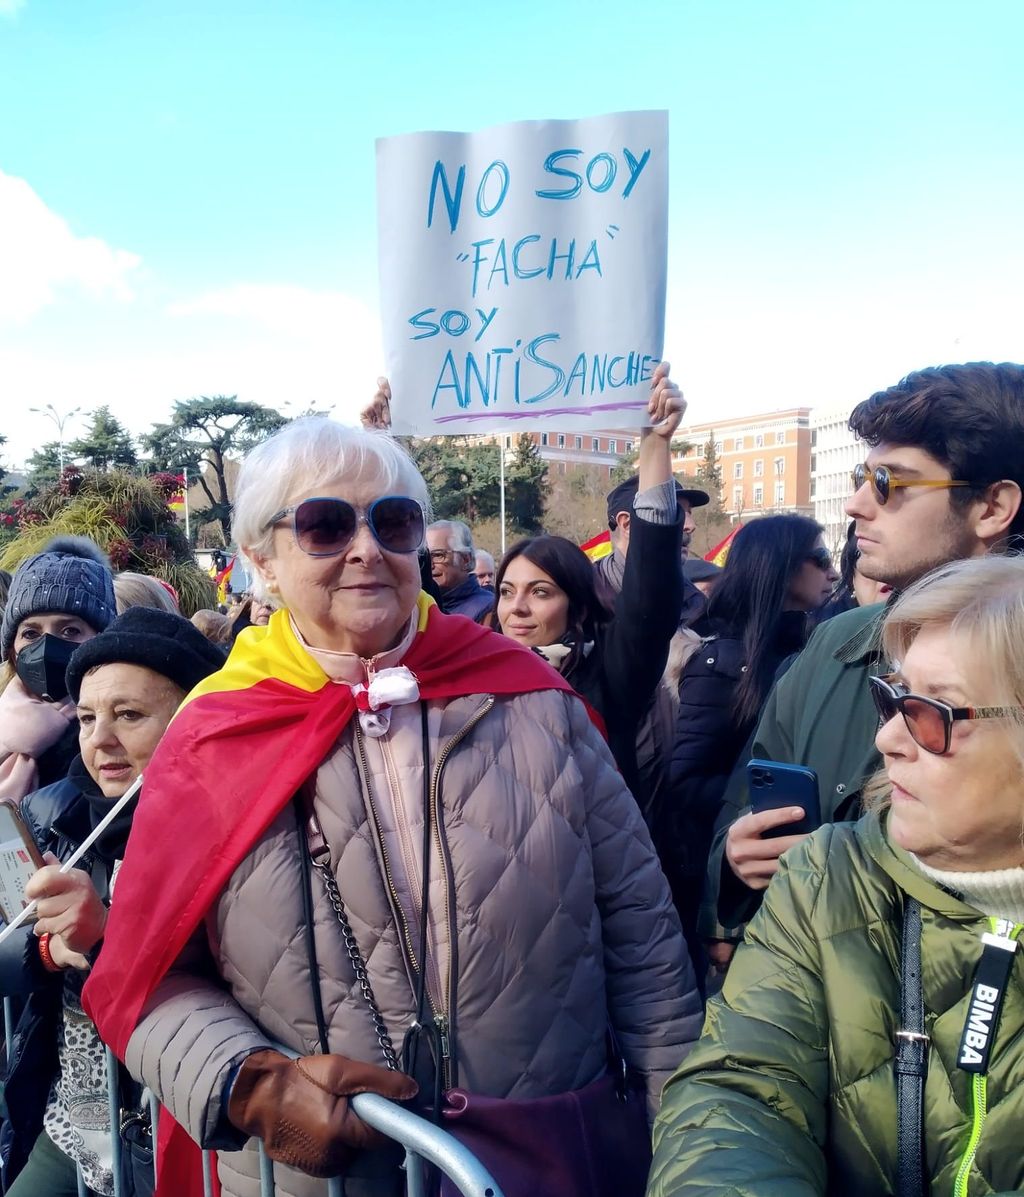 Miles de personas llenan la plaza de Cibeles contra la política de Pedro Sánchez